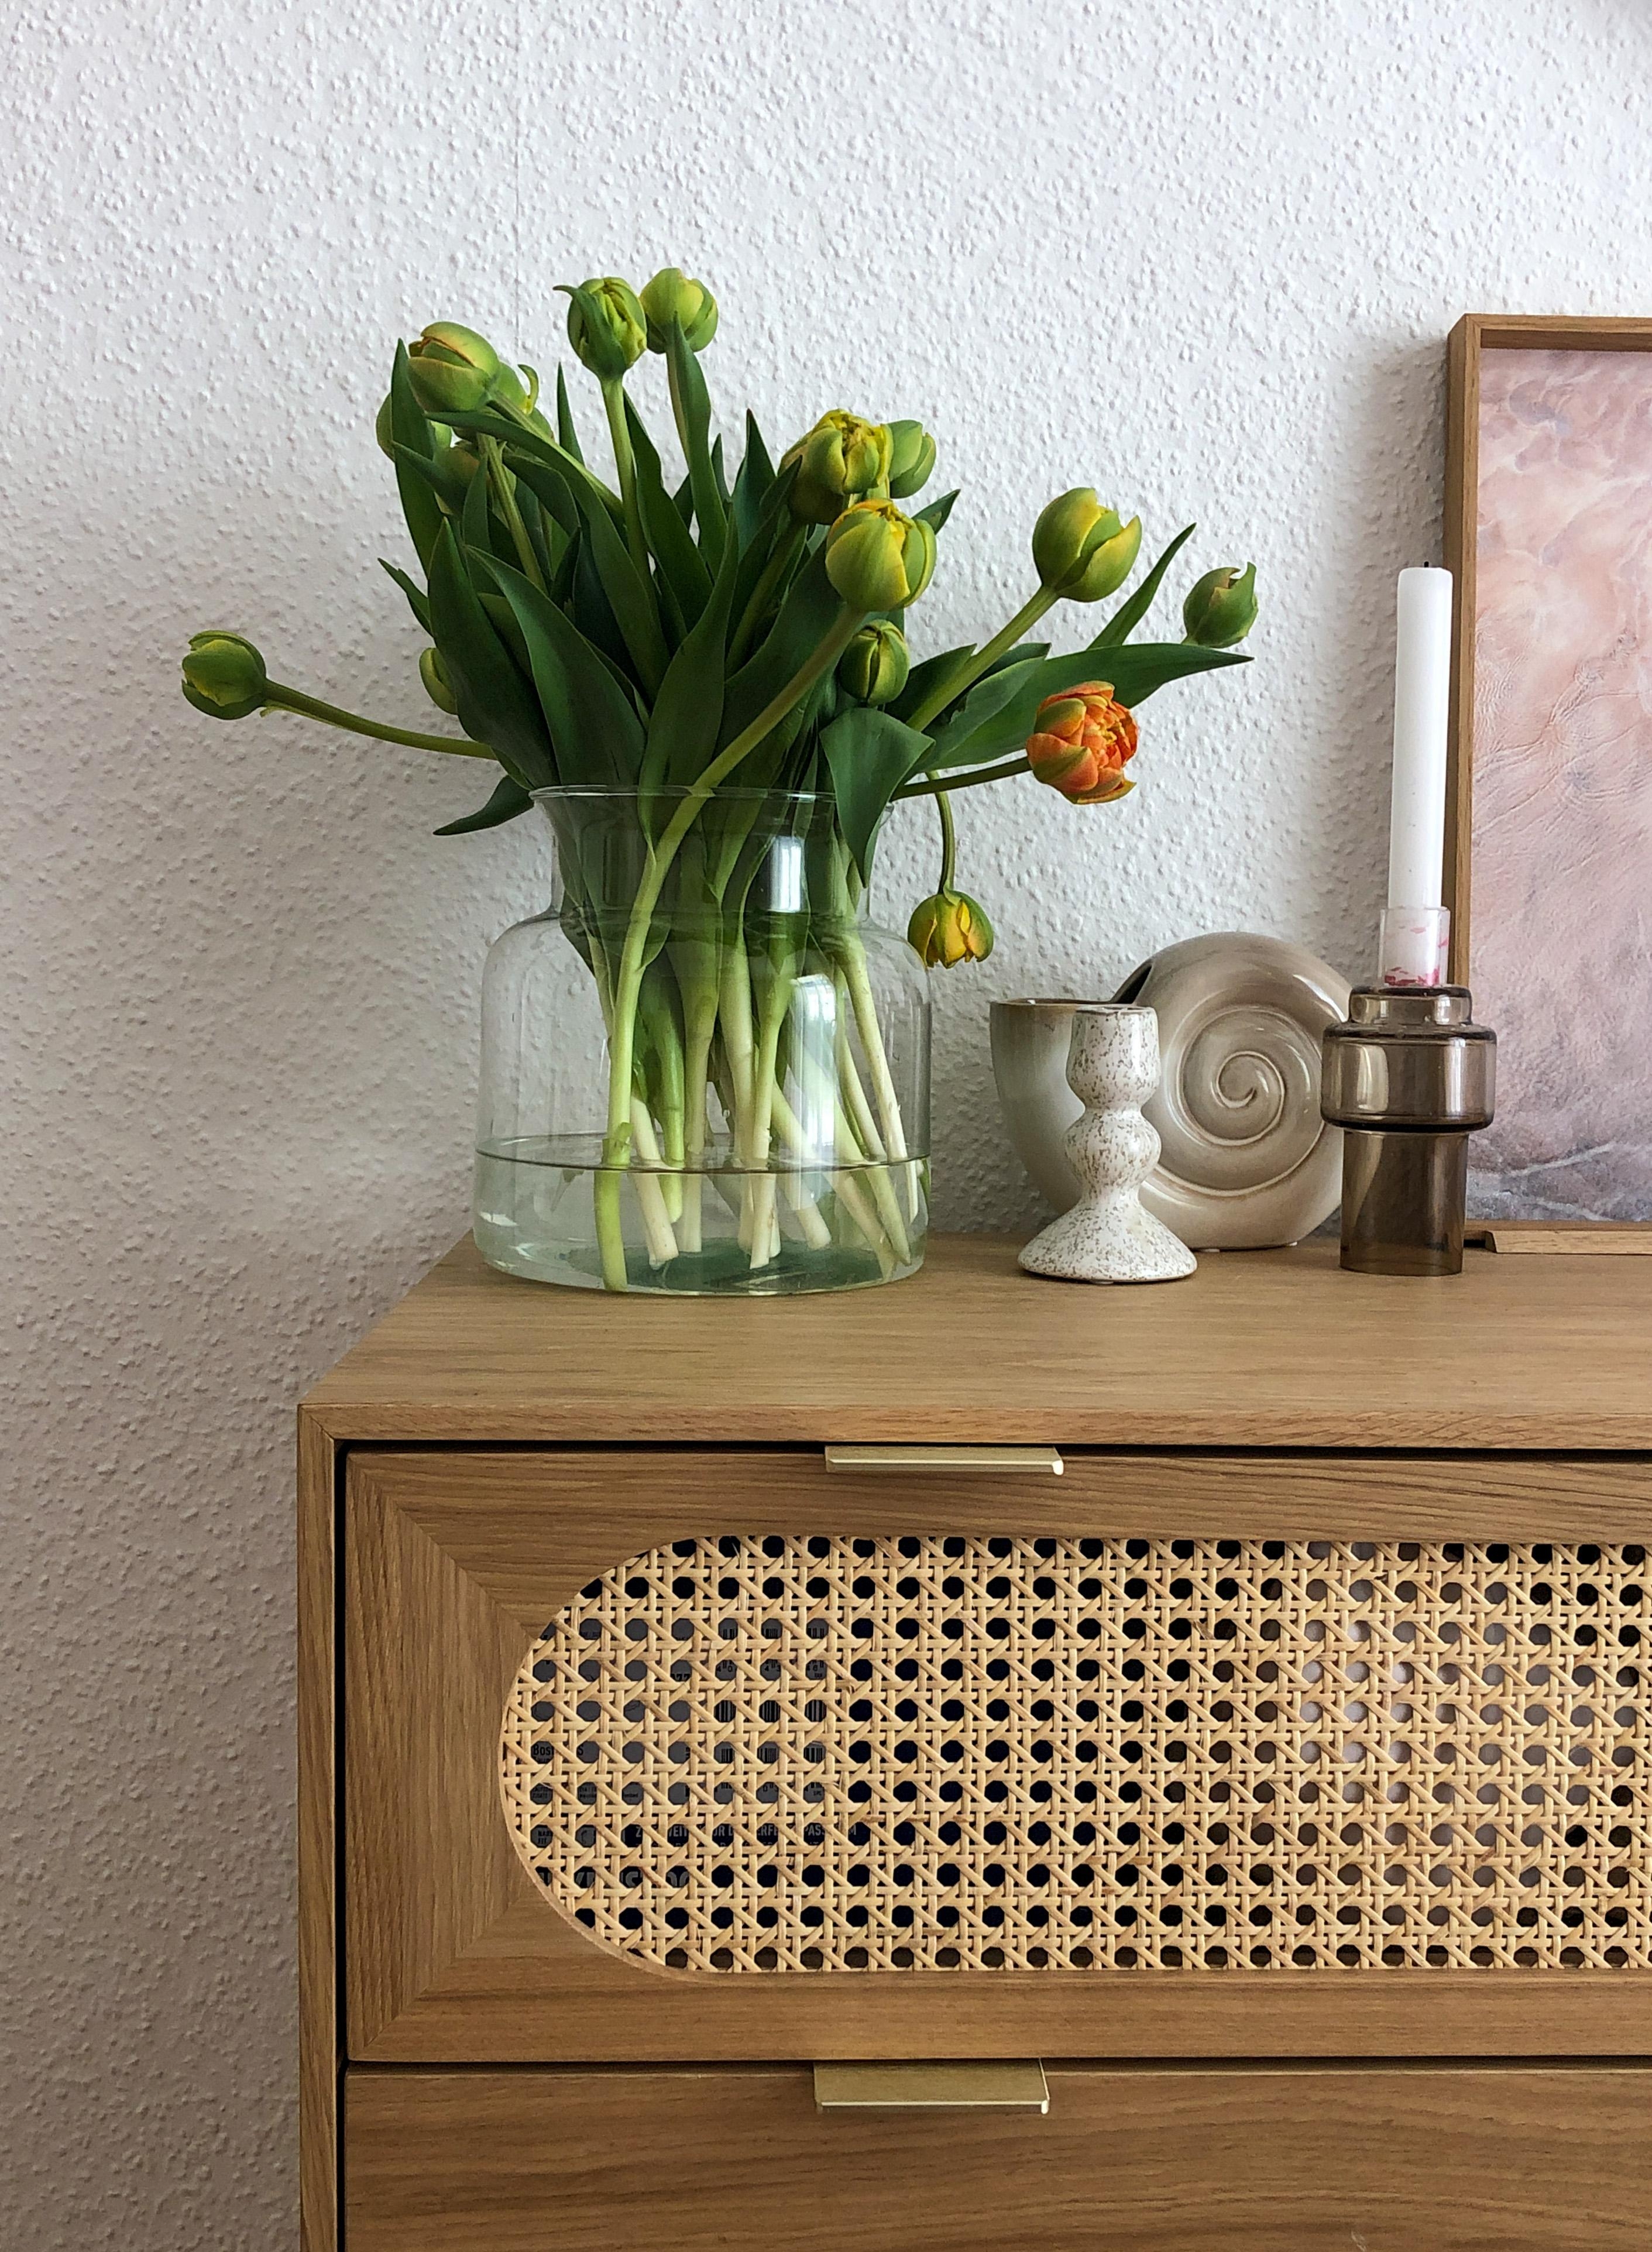 Frühling auf dem Sideboard 
Habt einen guten Start in die Woche (:
#freshflowers #wienergeflecht #tulpenliebe 